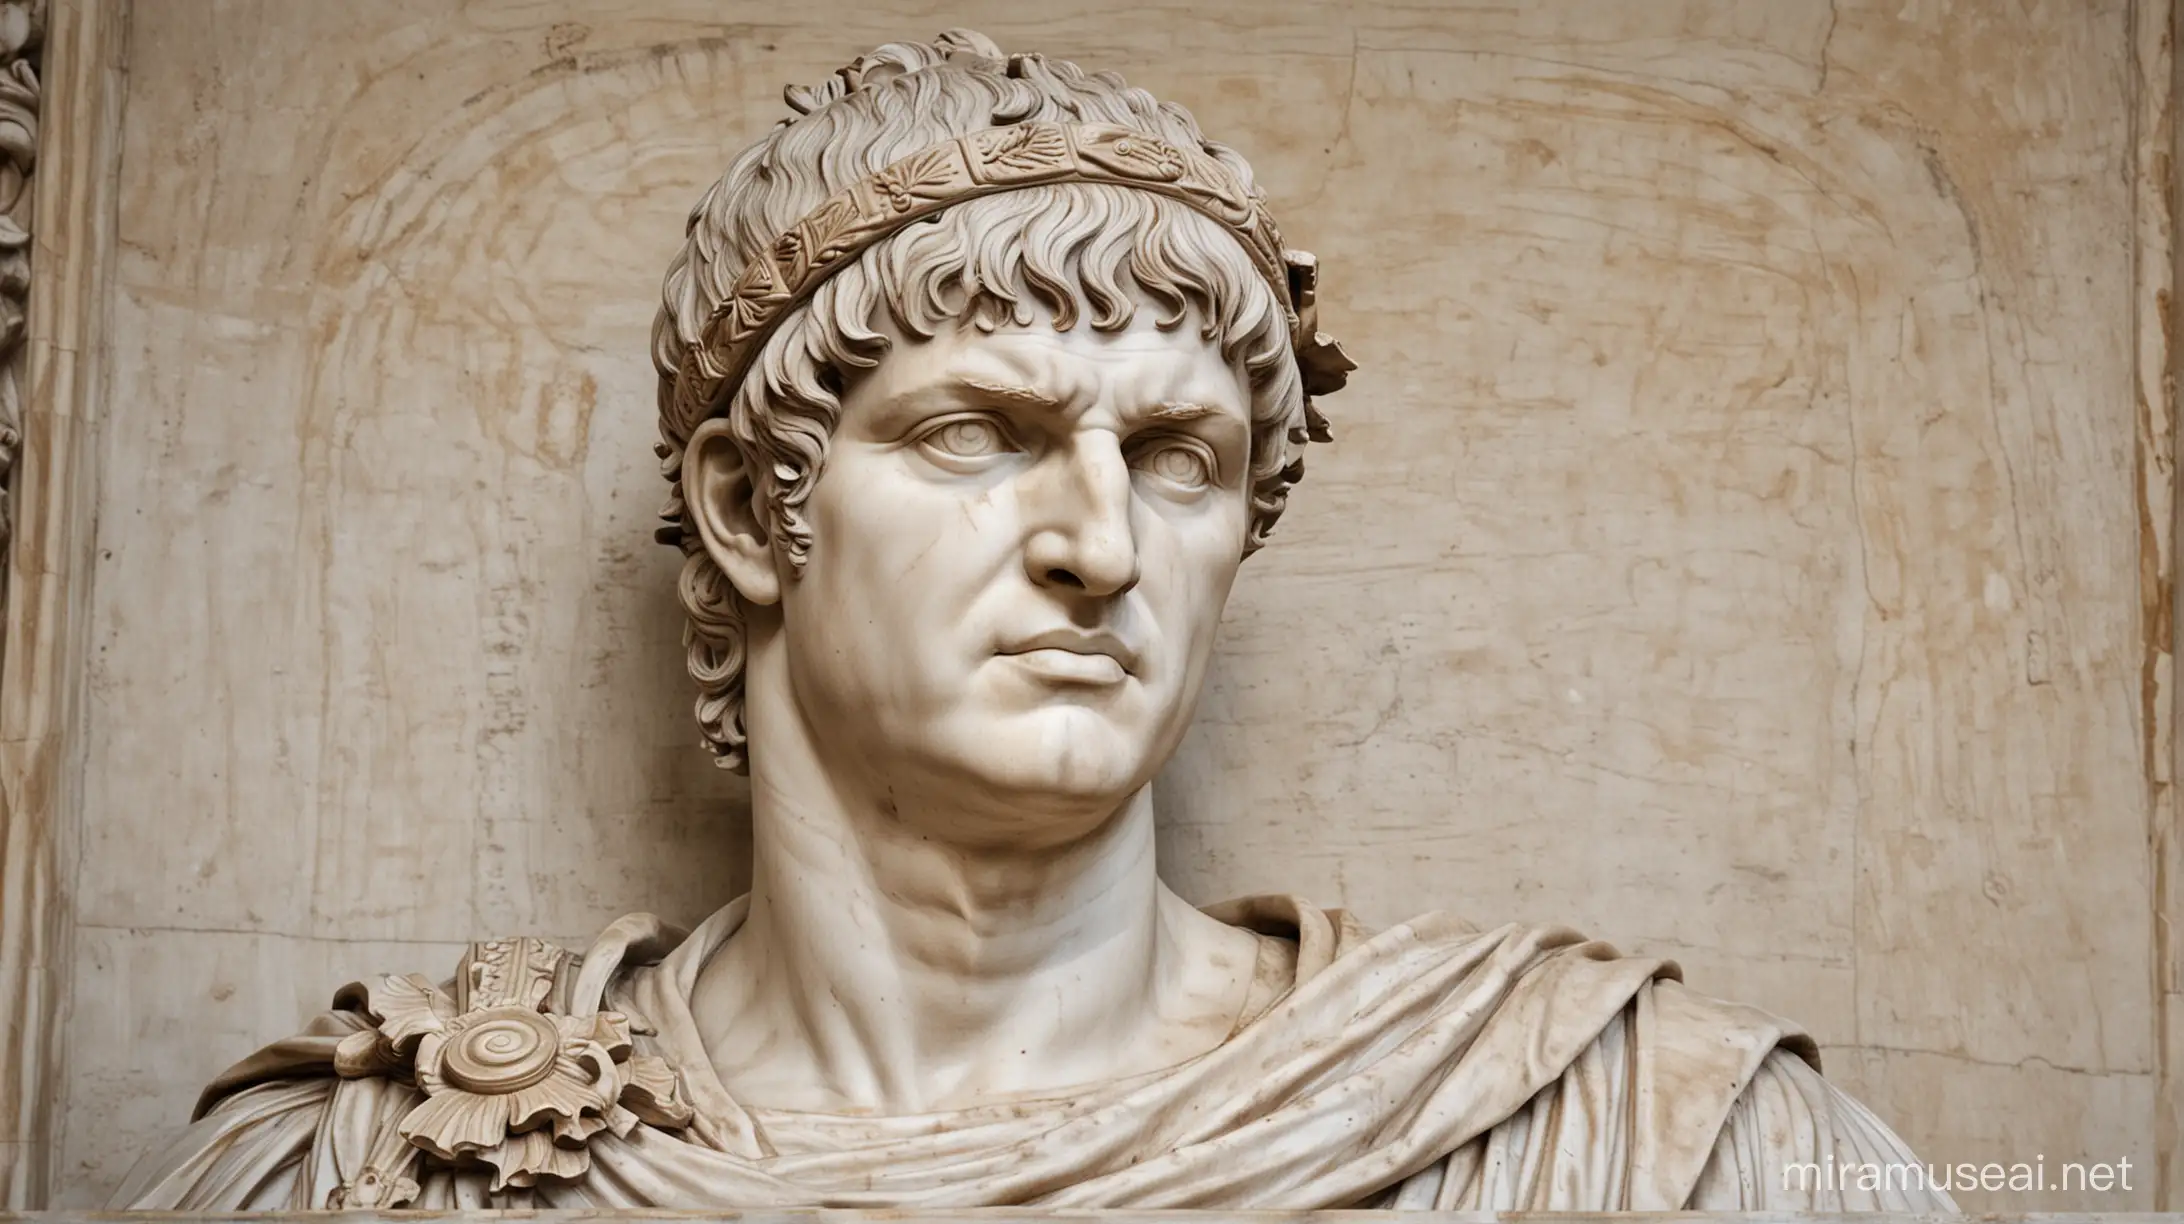 Nerón, cuyo nombre completo era Nerón Claudio César Augusto Germánico